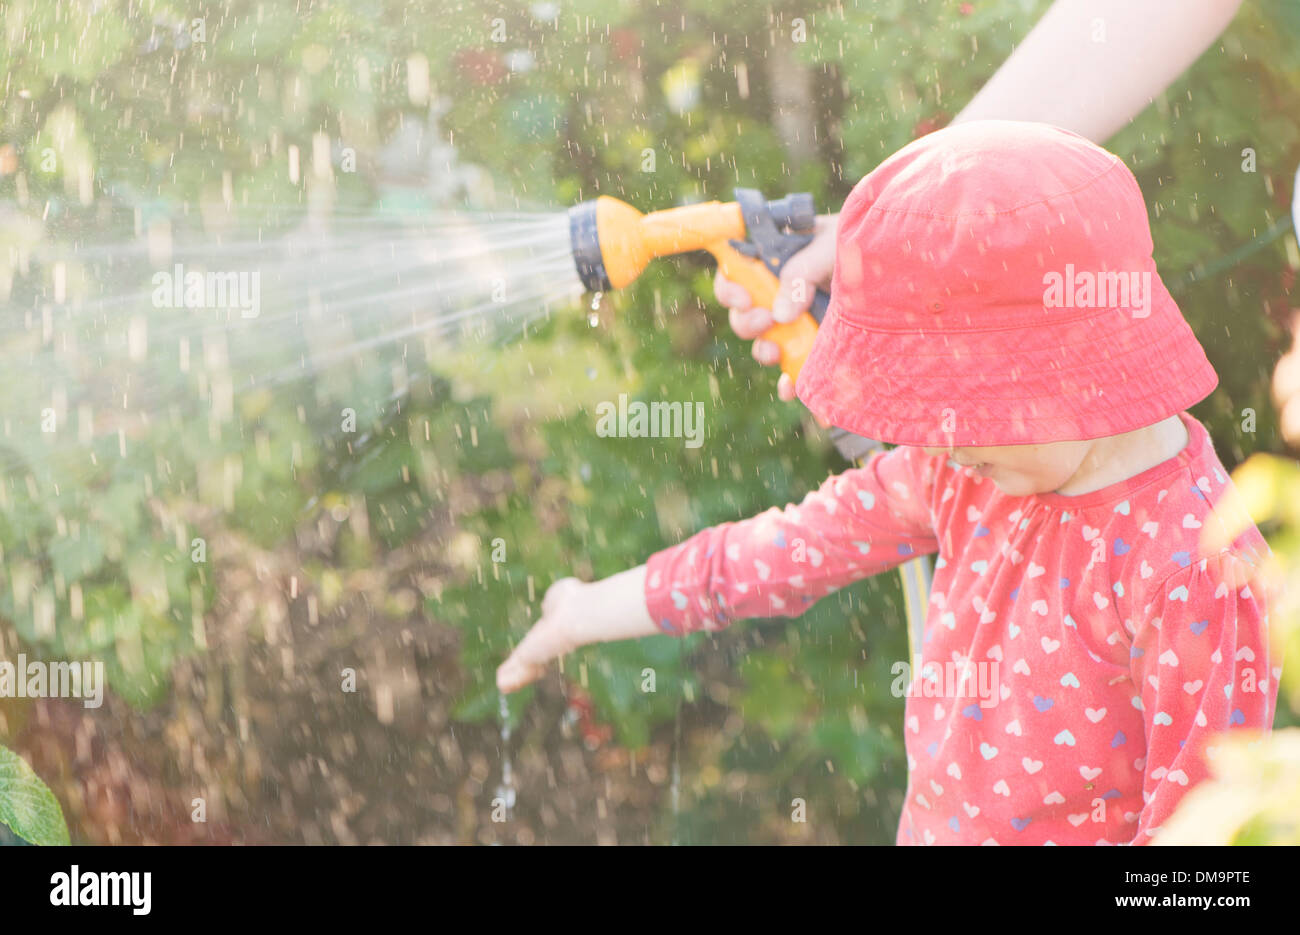 Stile di vita estate scena. Bambina giocando con il genitore nel giardino, sensazione di acqua dagli sprinkler Foto Stock